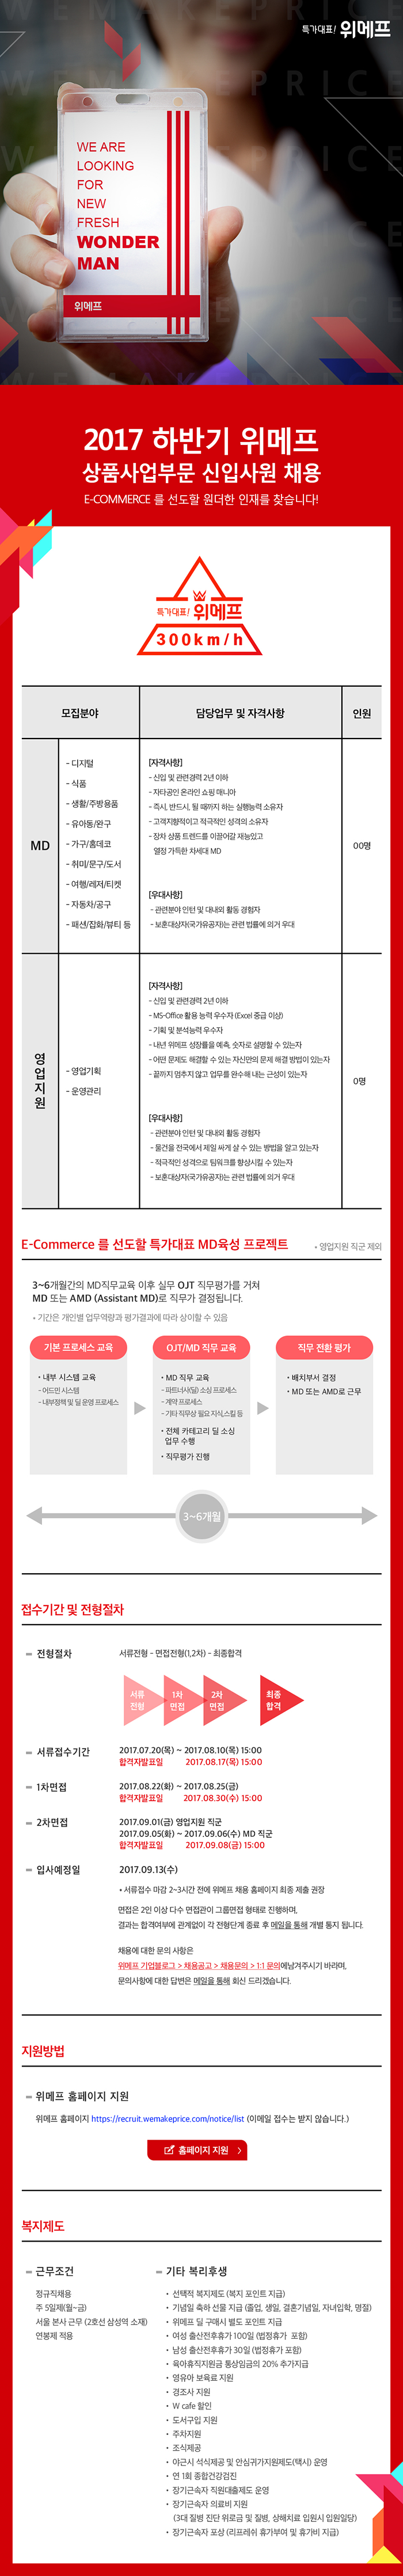 2017 하반기 위메프 상품사업부문 신입사원 채용